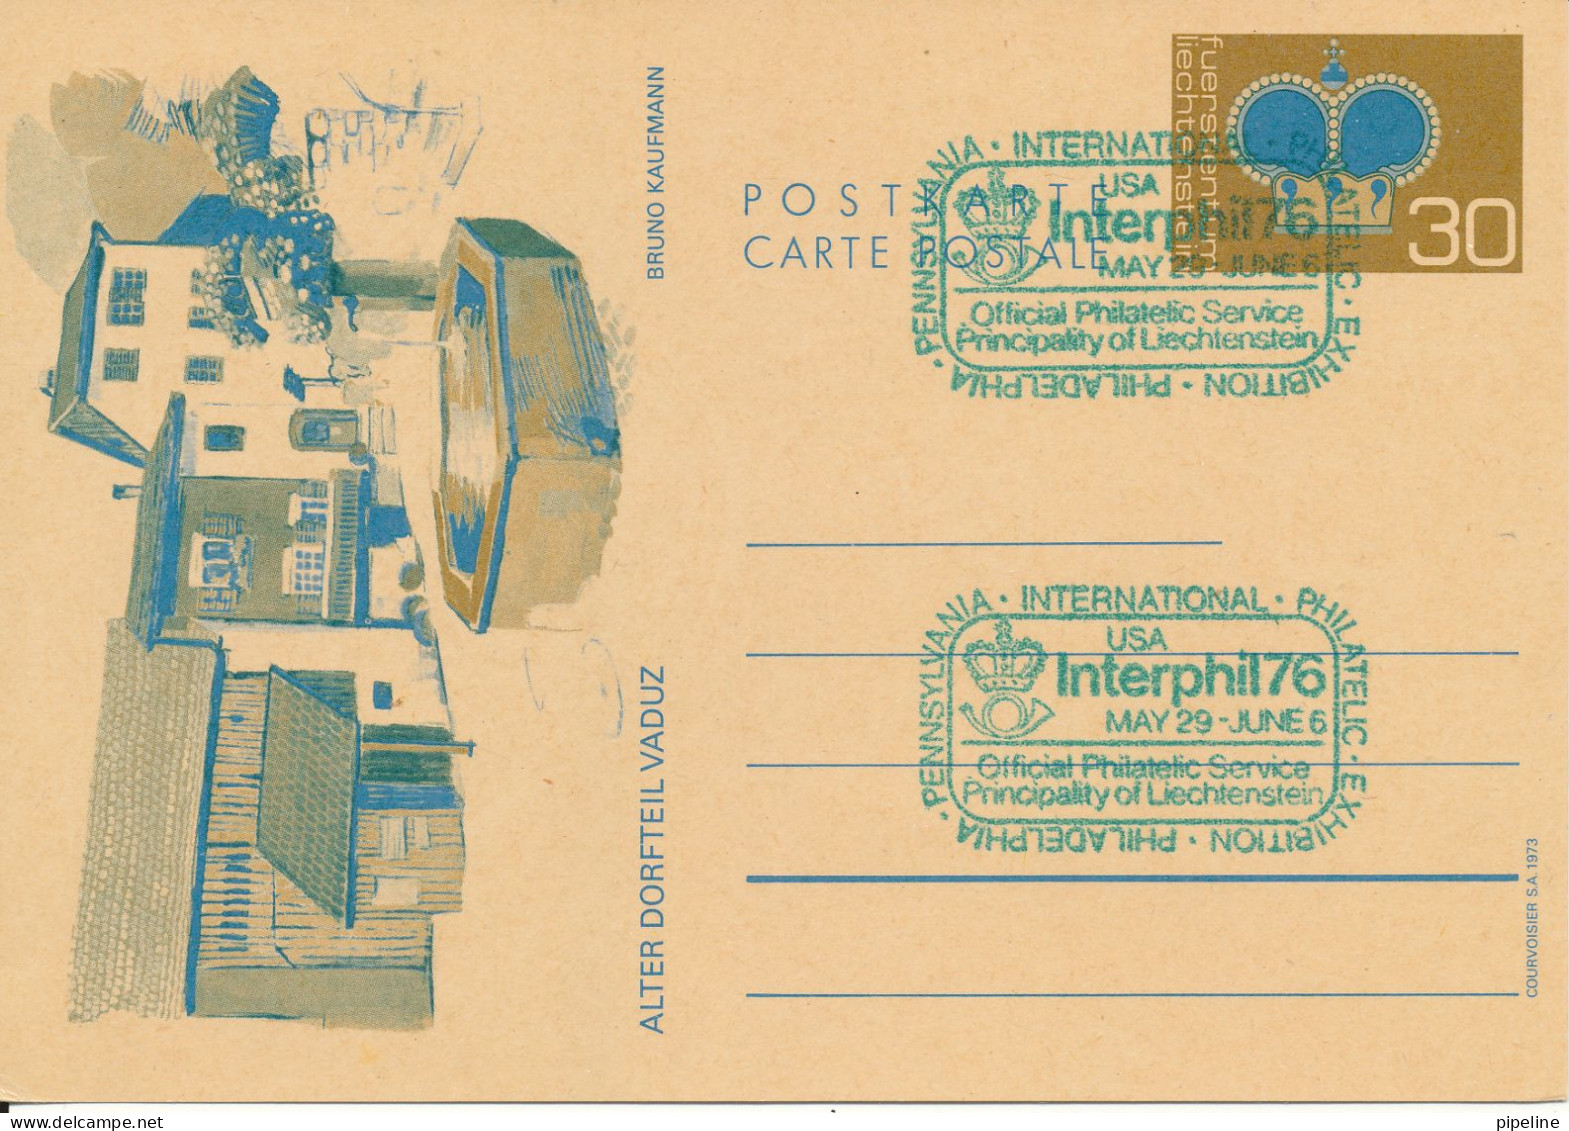 Liechtenstein Postal Stationery Card Interphil 76 USA 29-5 - 6-6-1976 - Postwaardestukken